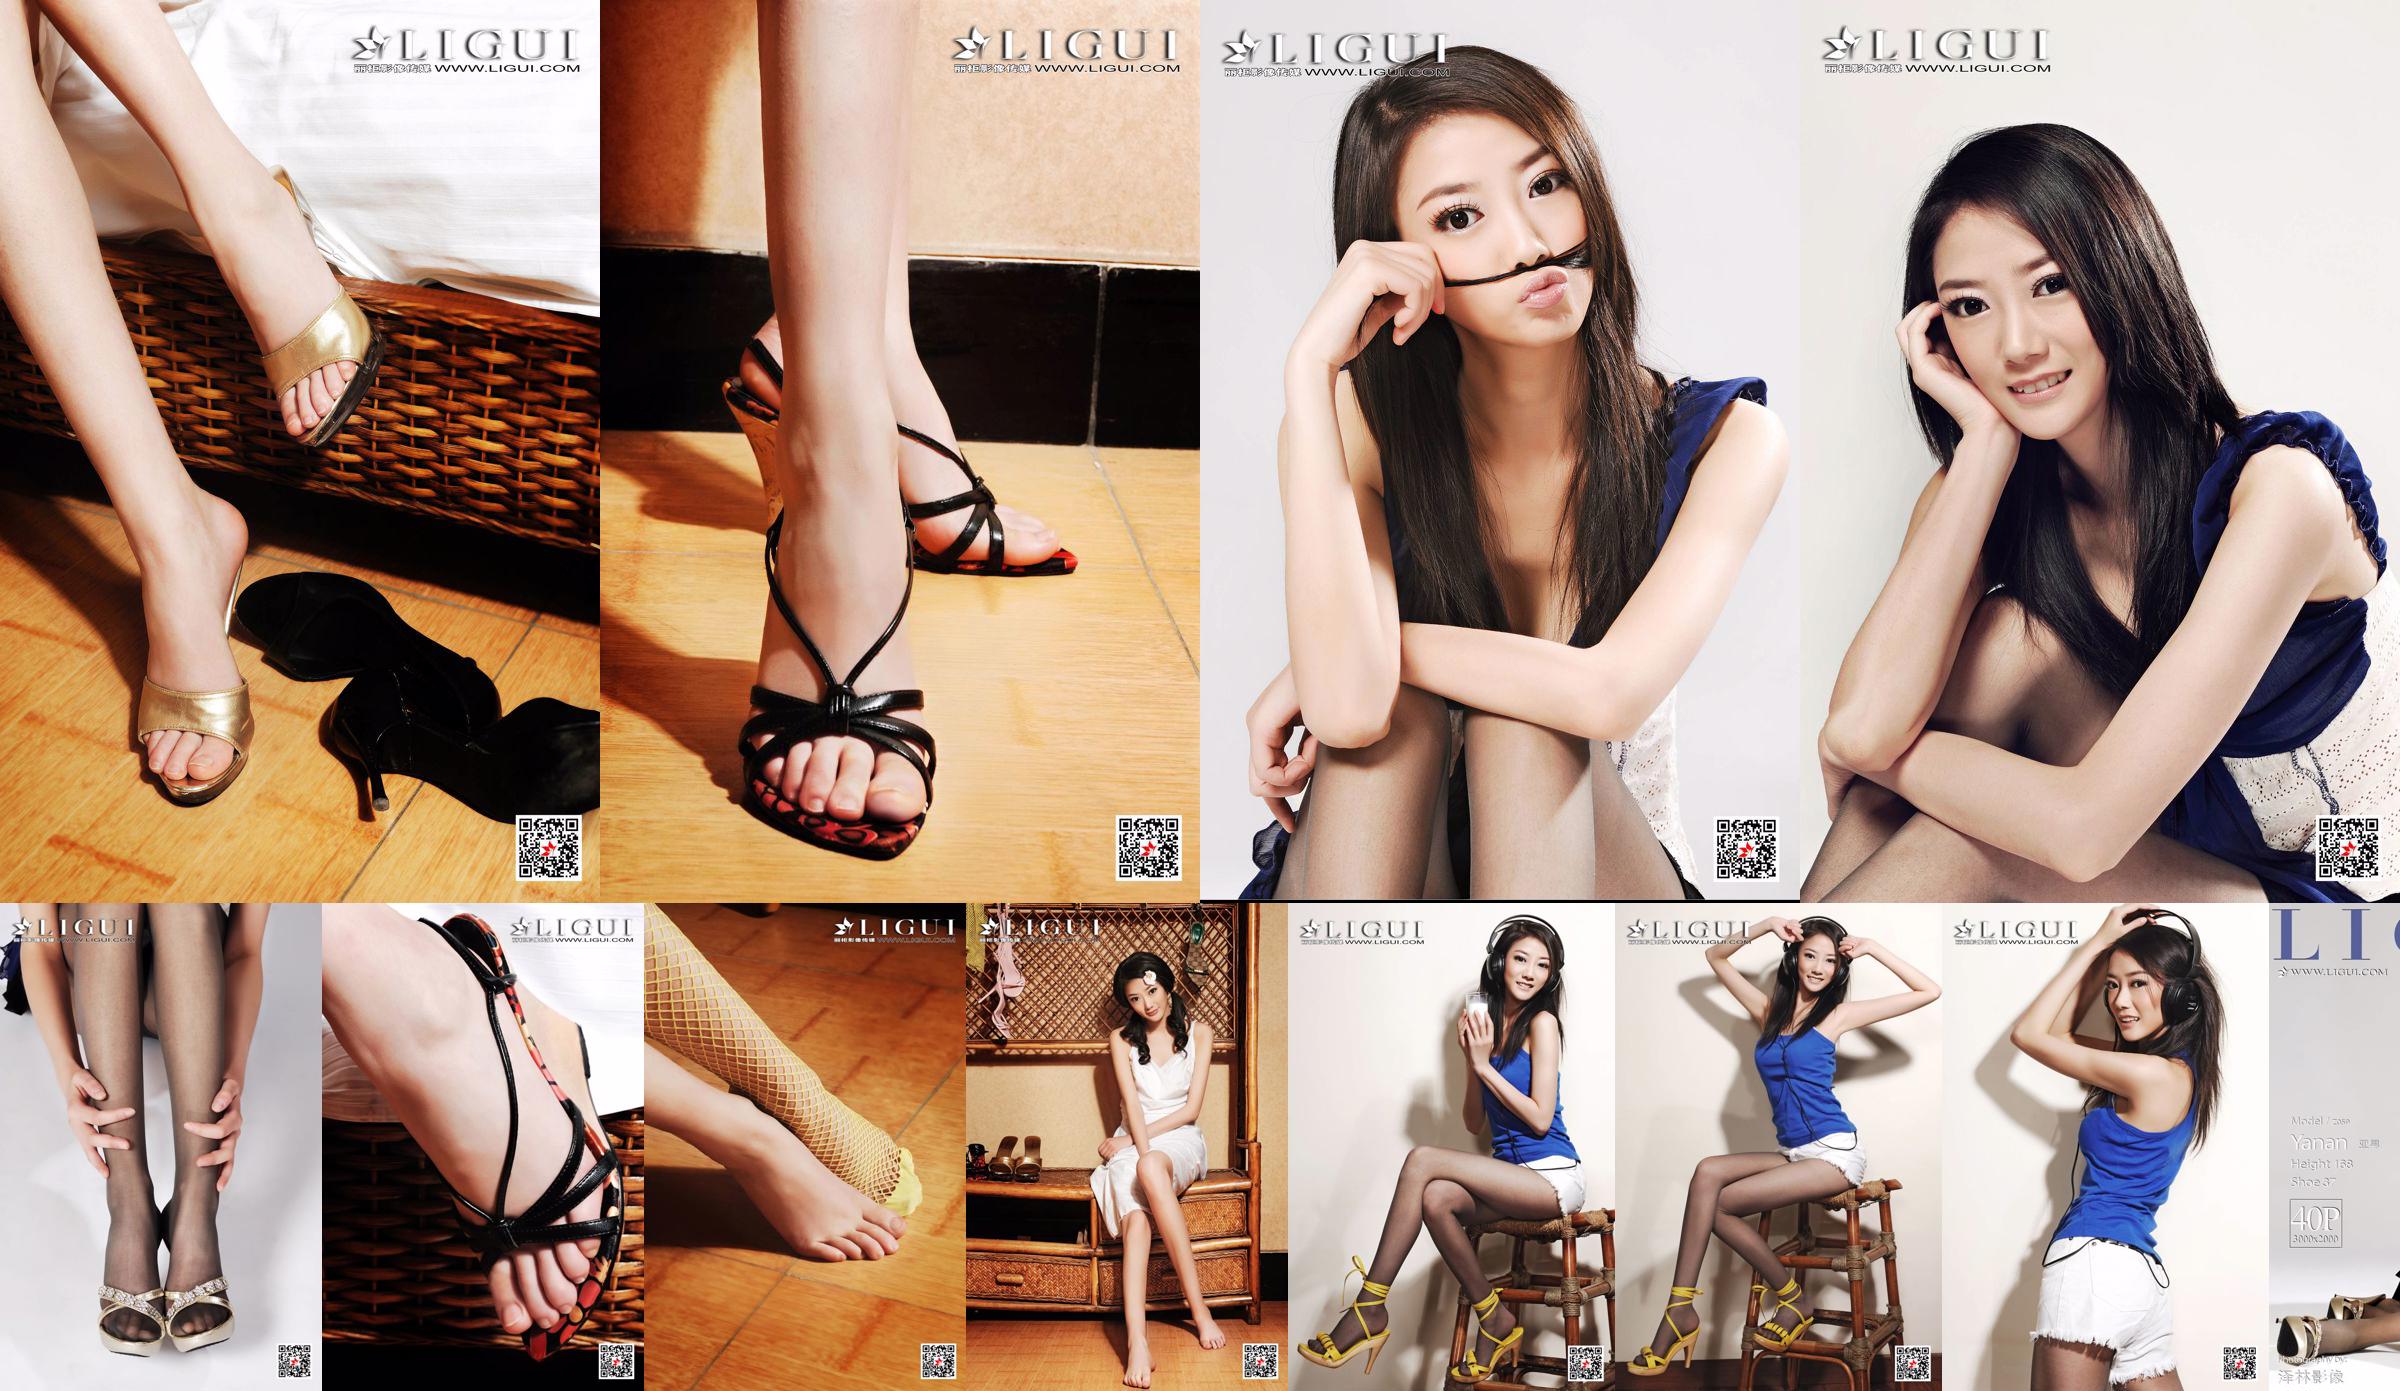 Азиатский мальчик-модель "Девушка с длинными ногами и темпераментом" [Лигуй Лигуй] No.a64845 Страница 32